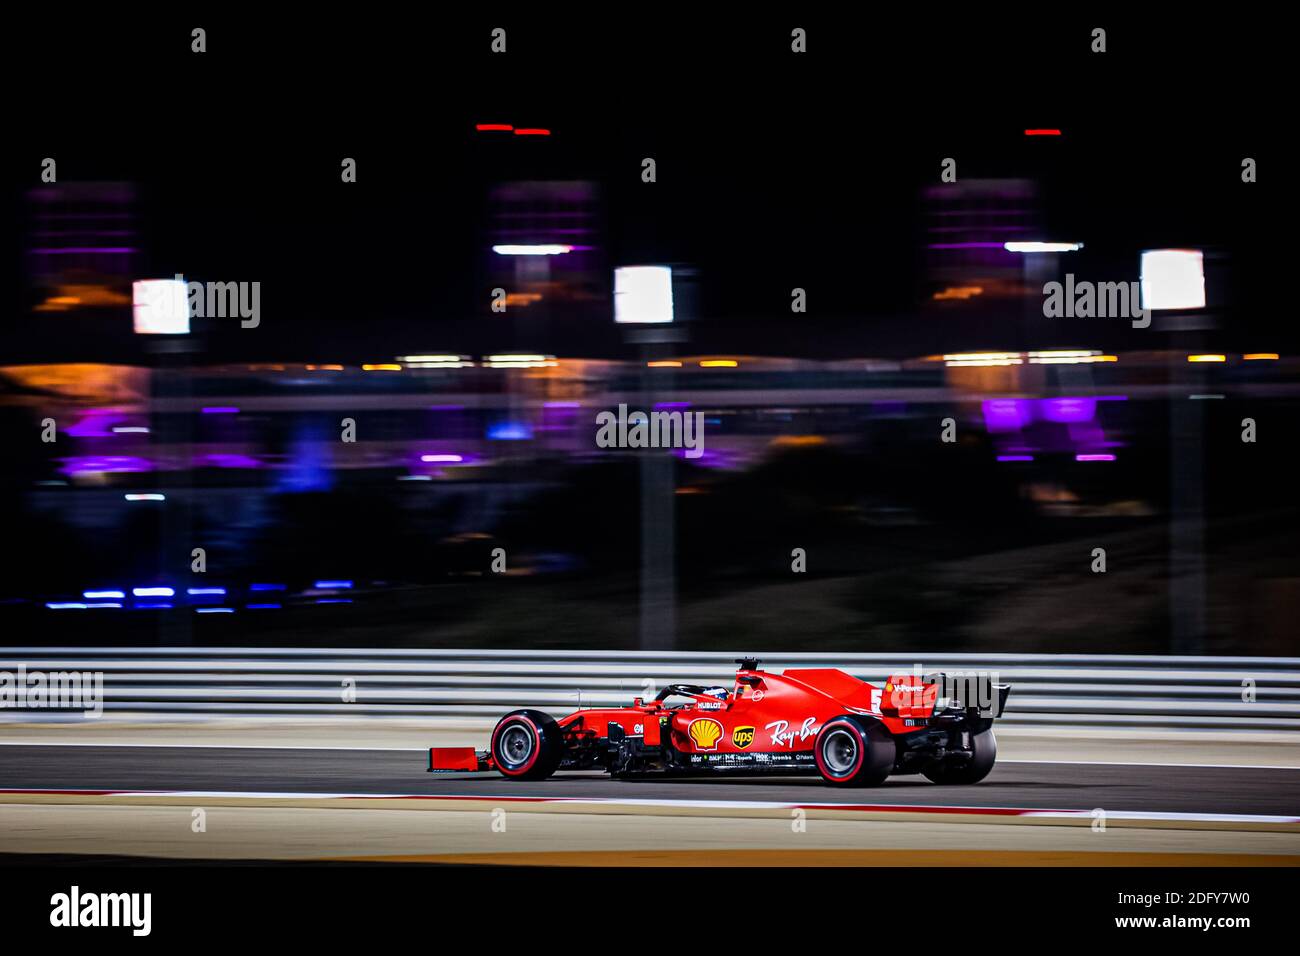 05 VETTEL Sebastian (ger), Scuderia Ferrari SF1000, azione durante la Formula 1 Rolex Sakhir Grand Prix 2020, dal 4 dicembre / LM Foto Stock